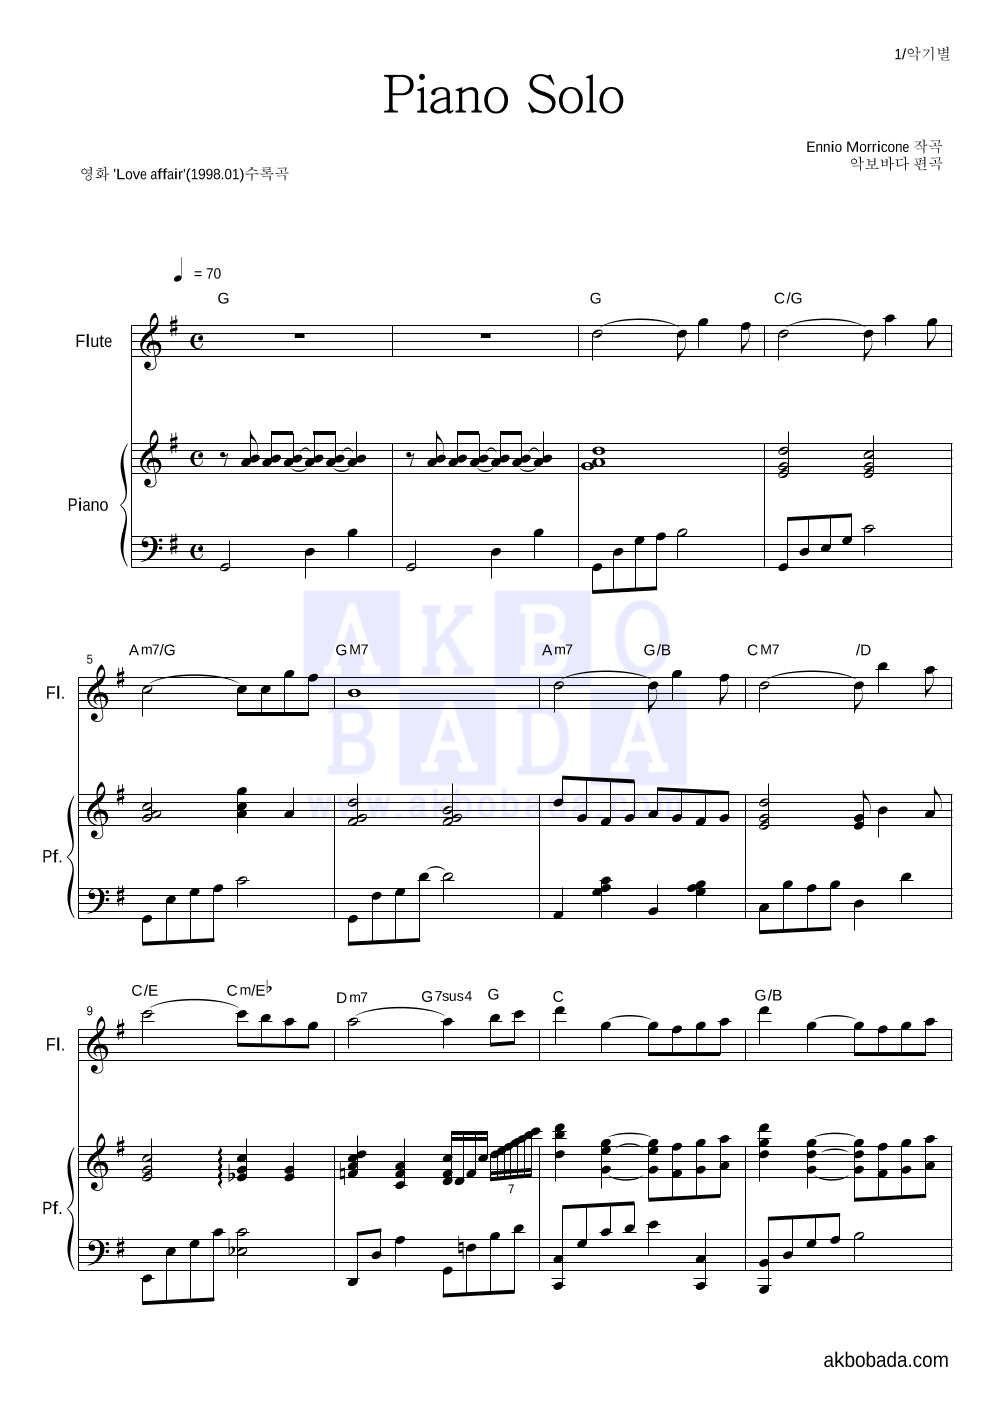 Ennio Morricone - Piano Solo 플룻&피아노 악보 